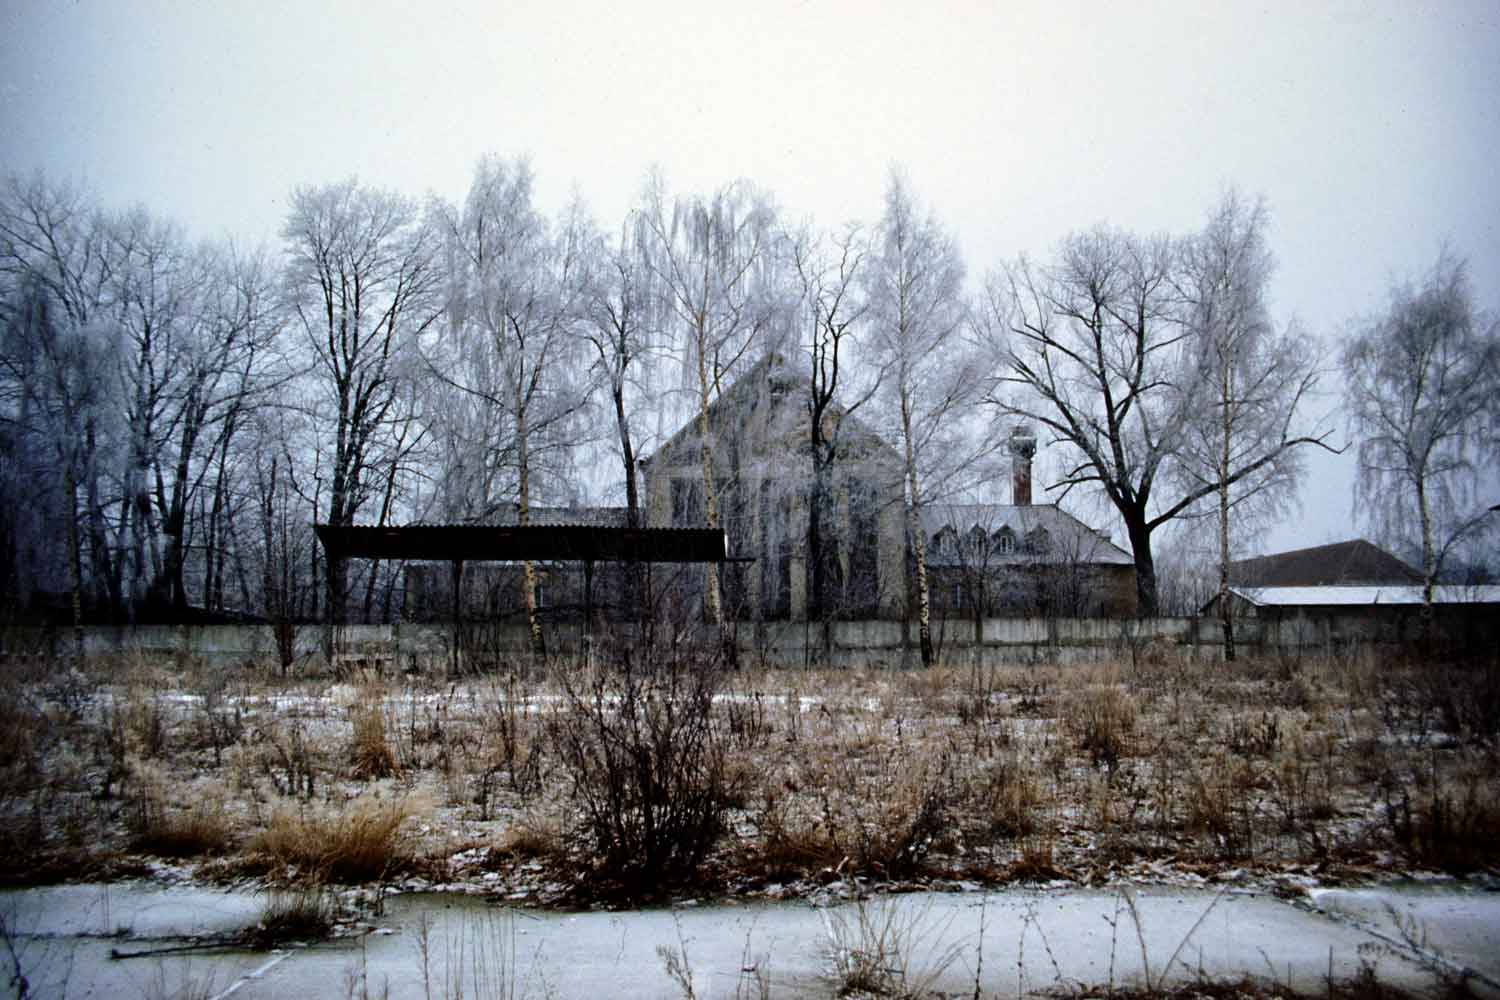 Foto, farbig: Im Hintergrund das Festspielhaus, davor eine Reihe kahler Bäume, im Vordergrund Brachland mit Büschen.